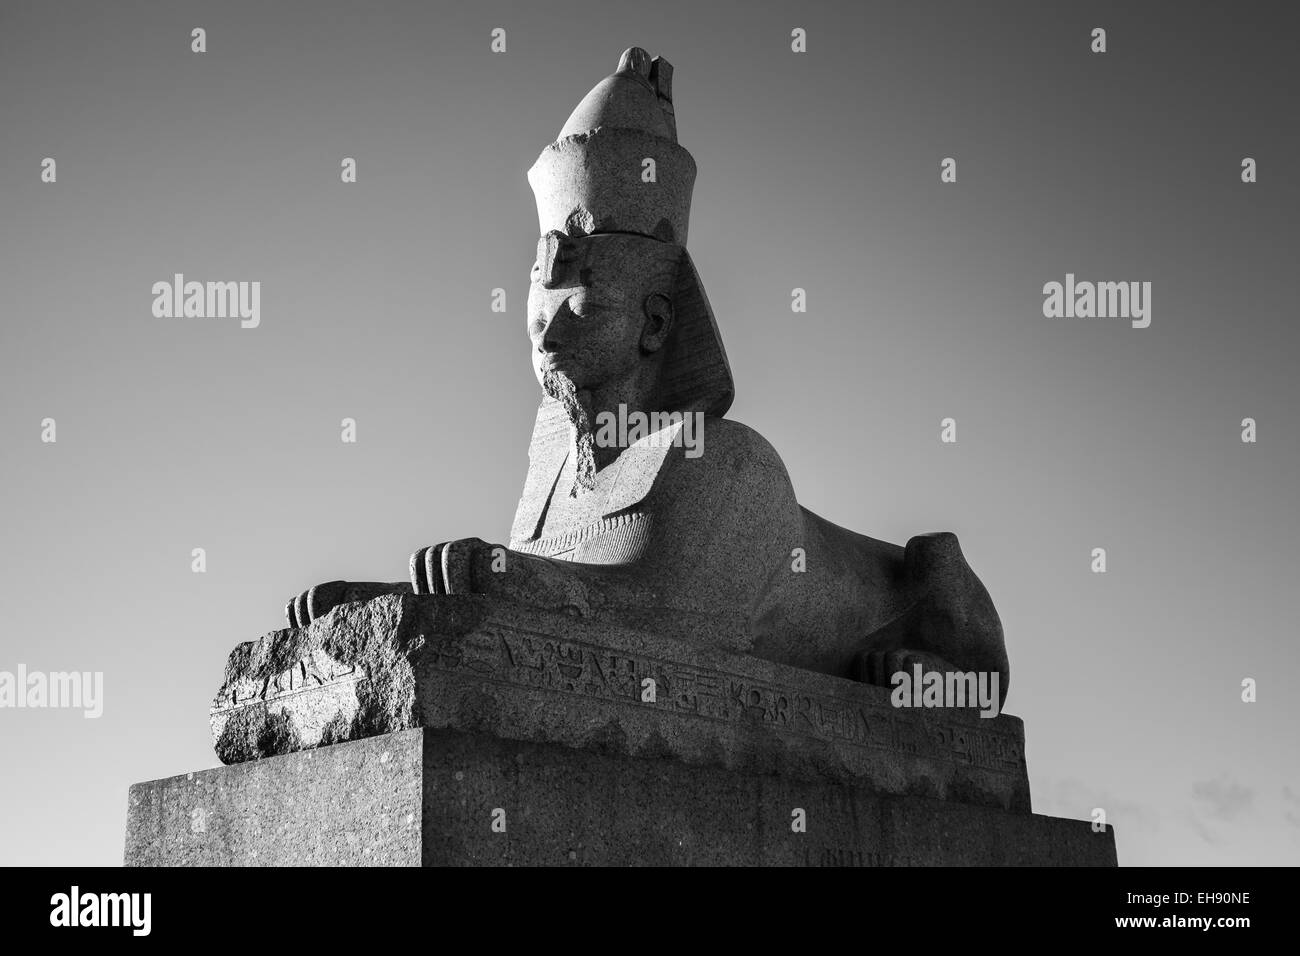 La sfinge di granito. Foto in bianco e nero dell'antico monumento. Punto di riferimento del fiume Neva costa a San Pietroburgo, Russia Foto Stock